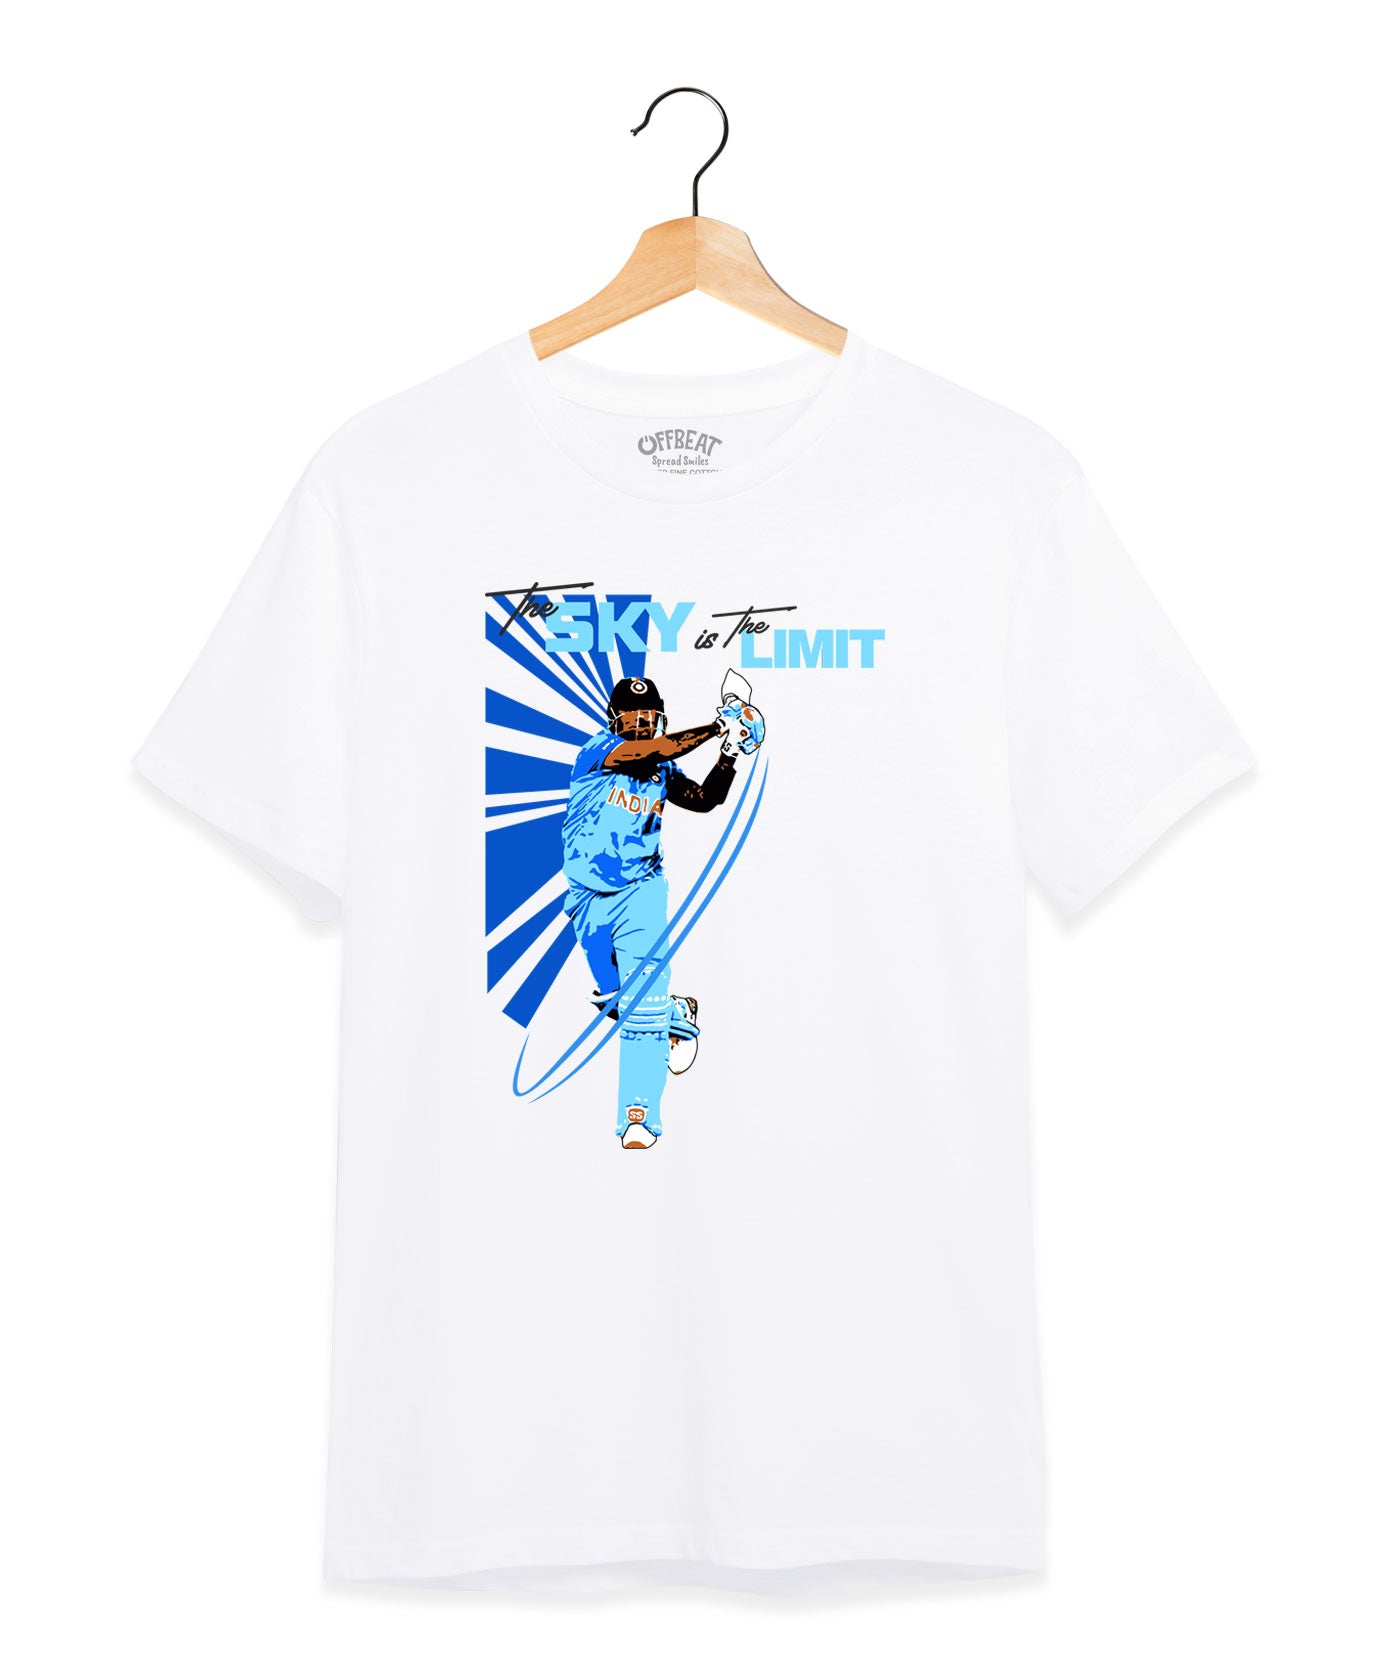 Sky Limit - Dryfit T-Shirt for Unisex